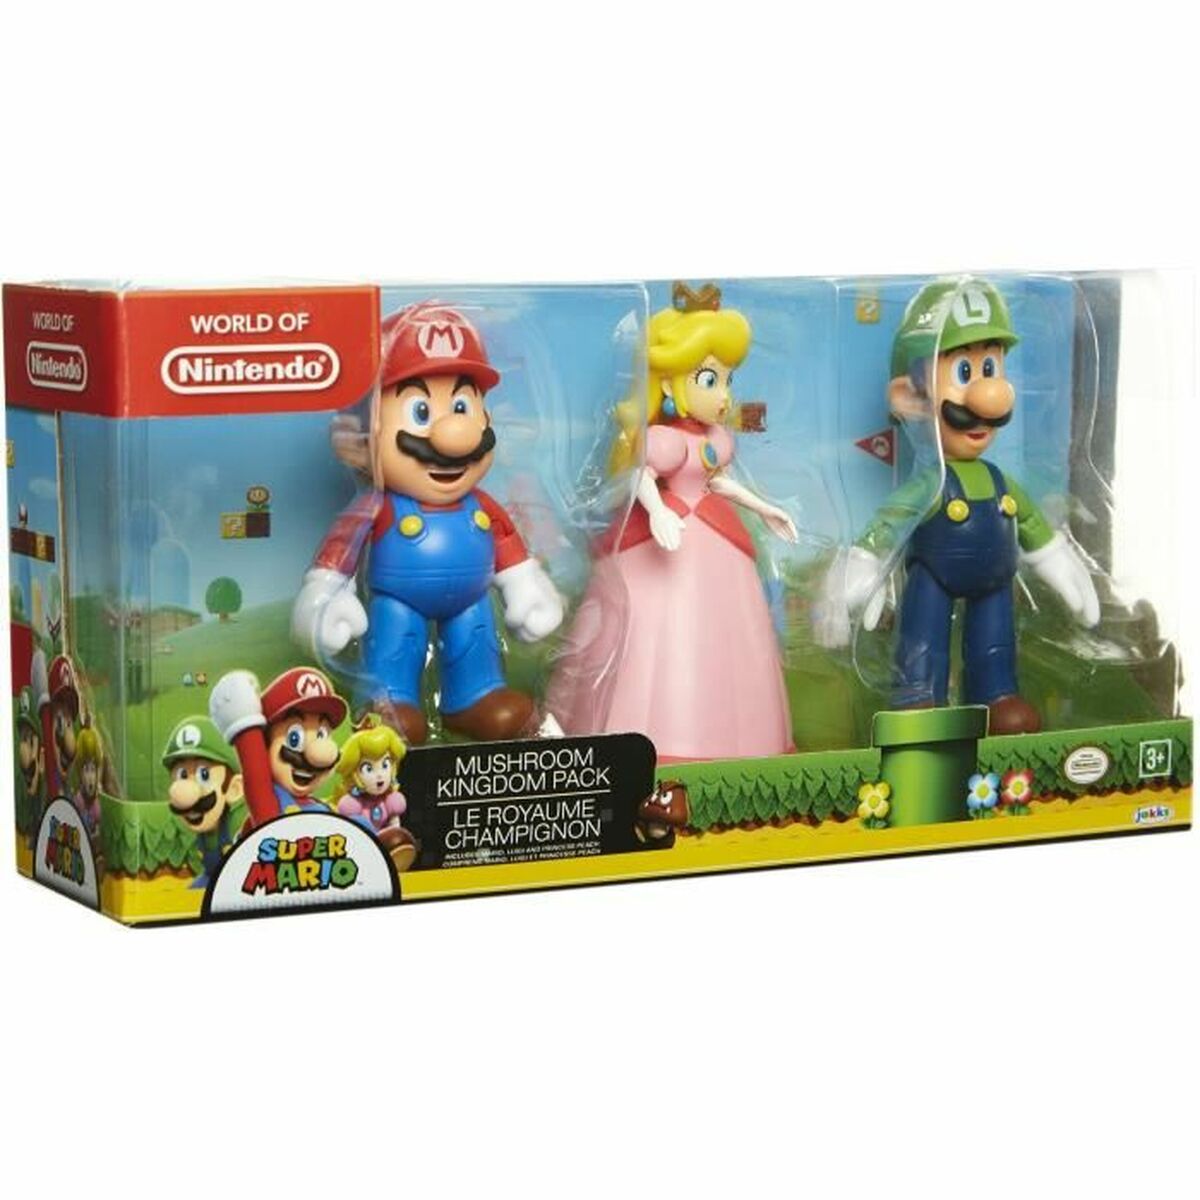 Pack 3 Figurines Super Mario Kingdom of the Fungus 491160 10 cm